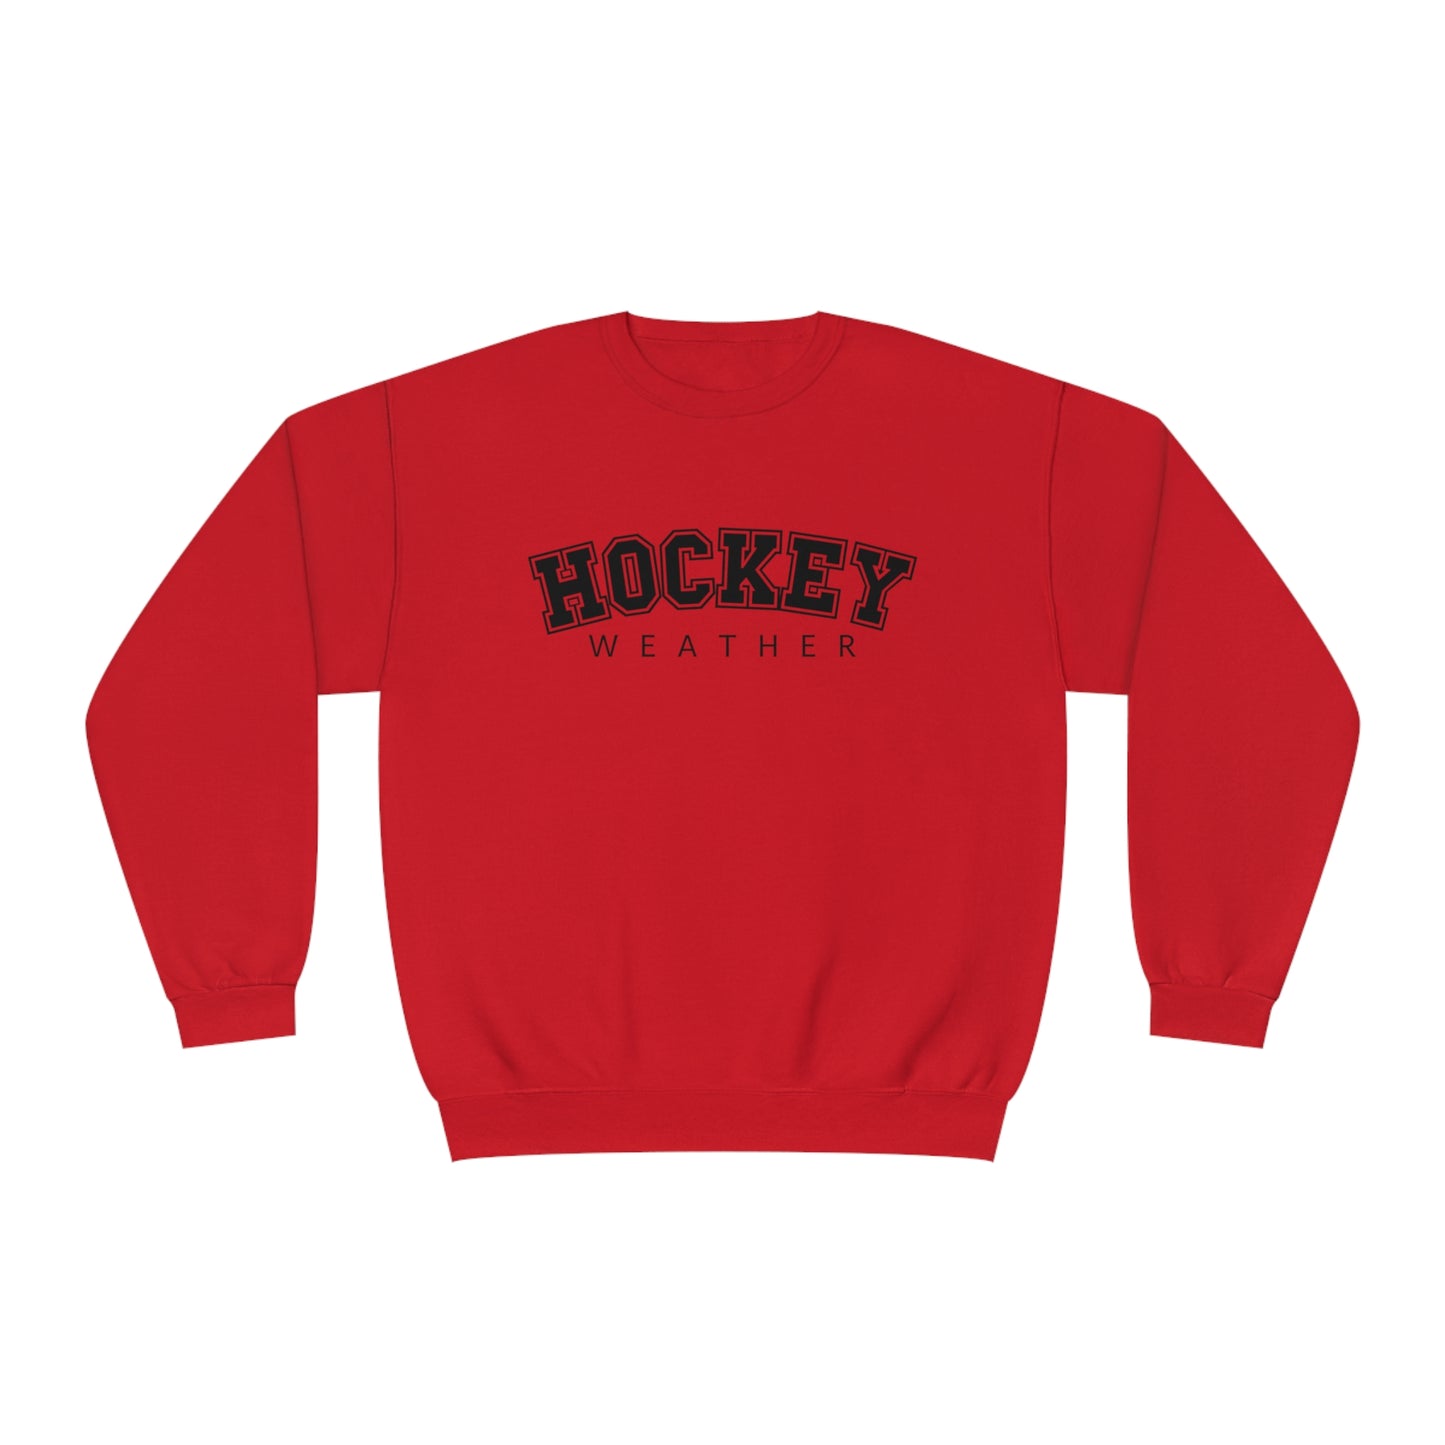 Hockey Weather Unisex Jerzees Crewneck Sweatshirt